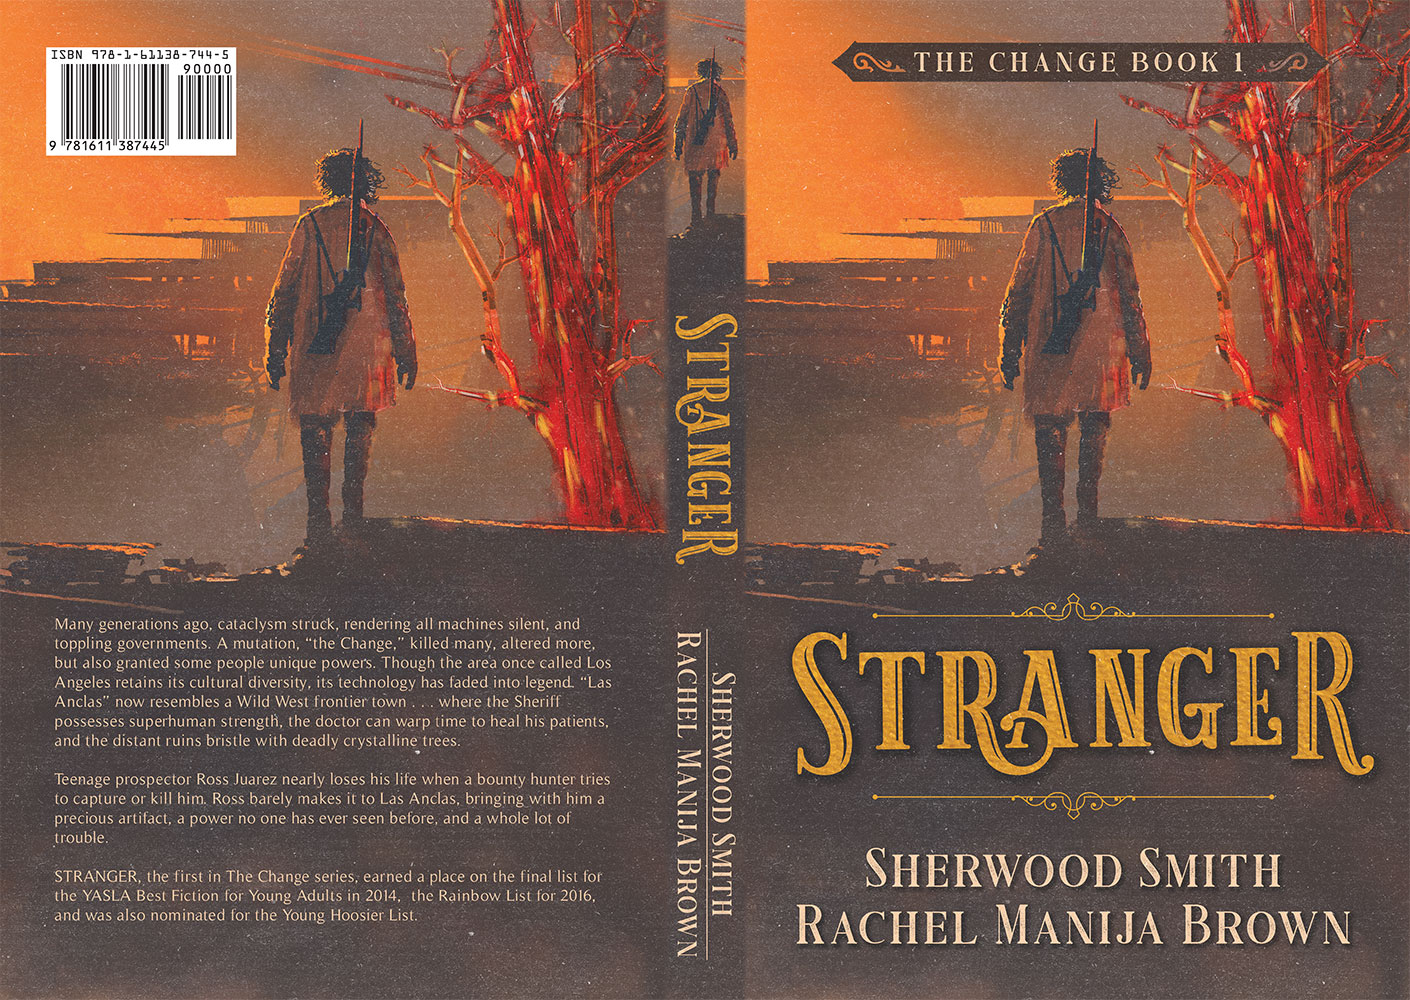 Stranger by Sherwood Smith and Rachel Manija Brown